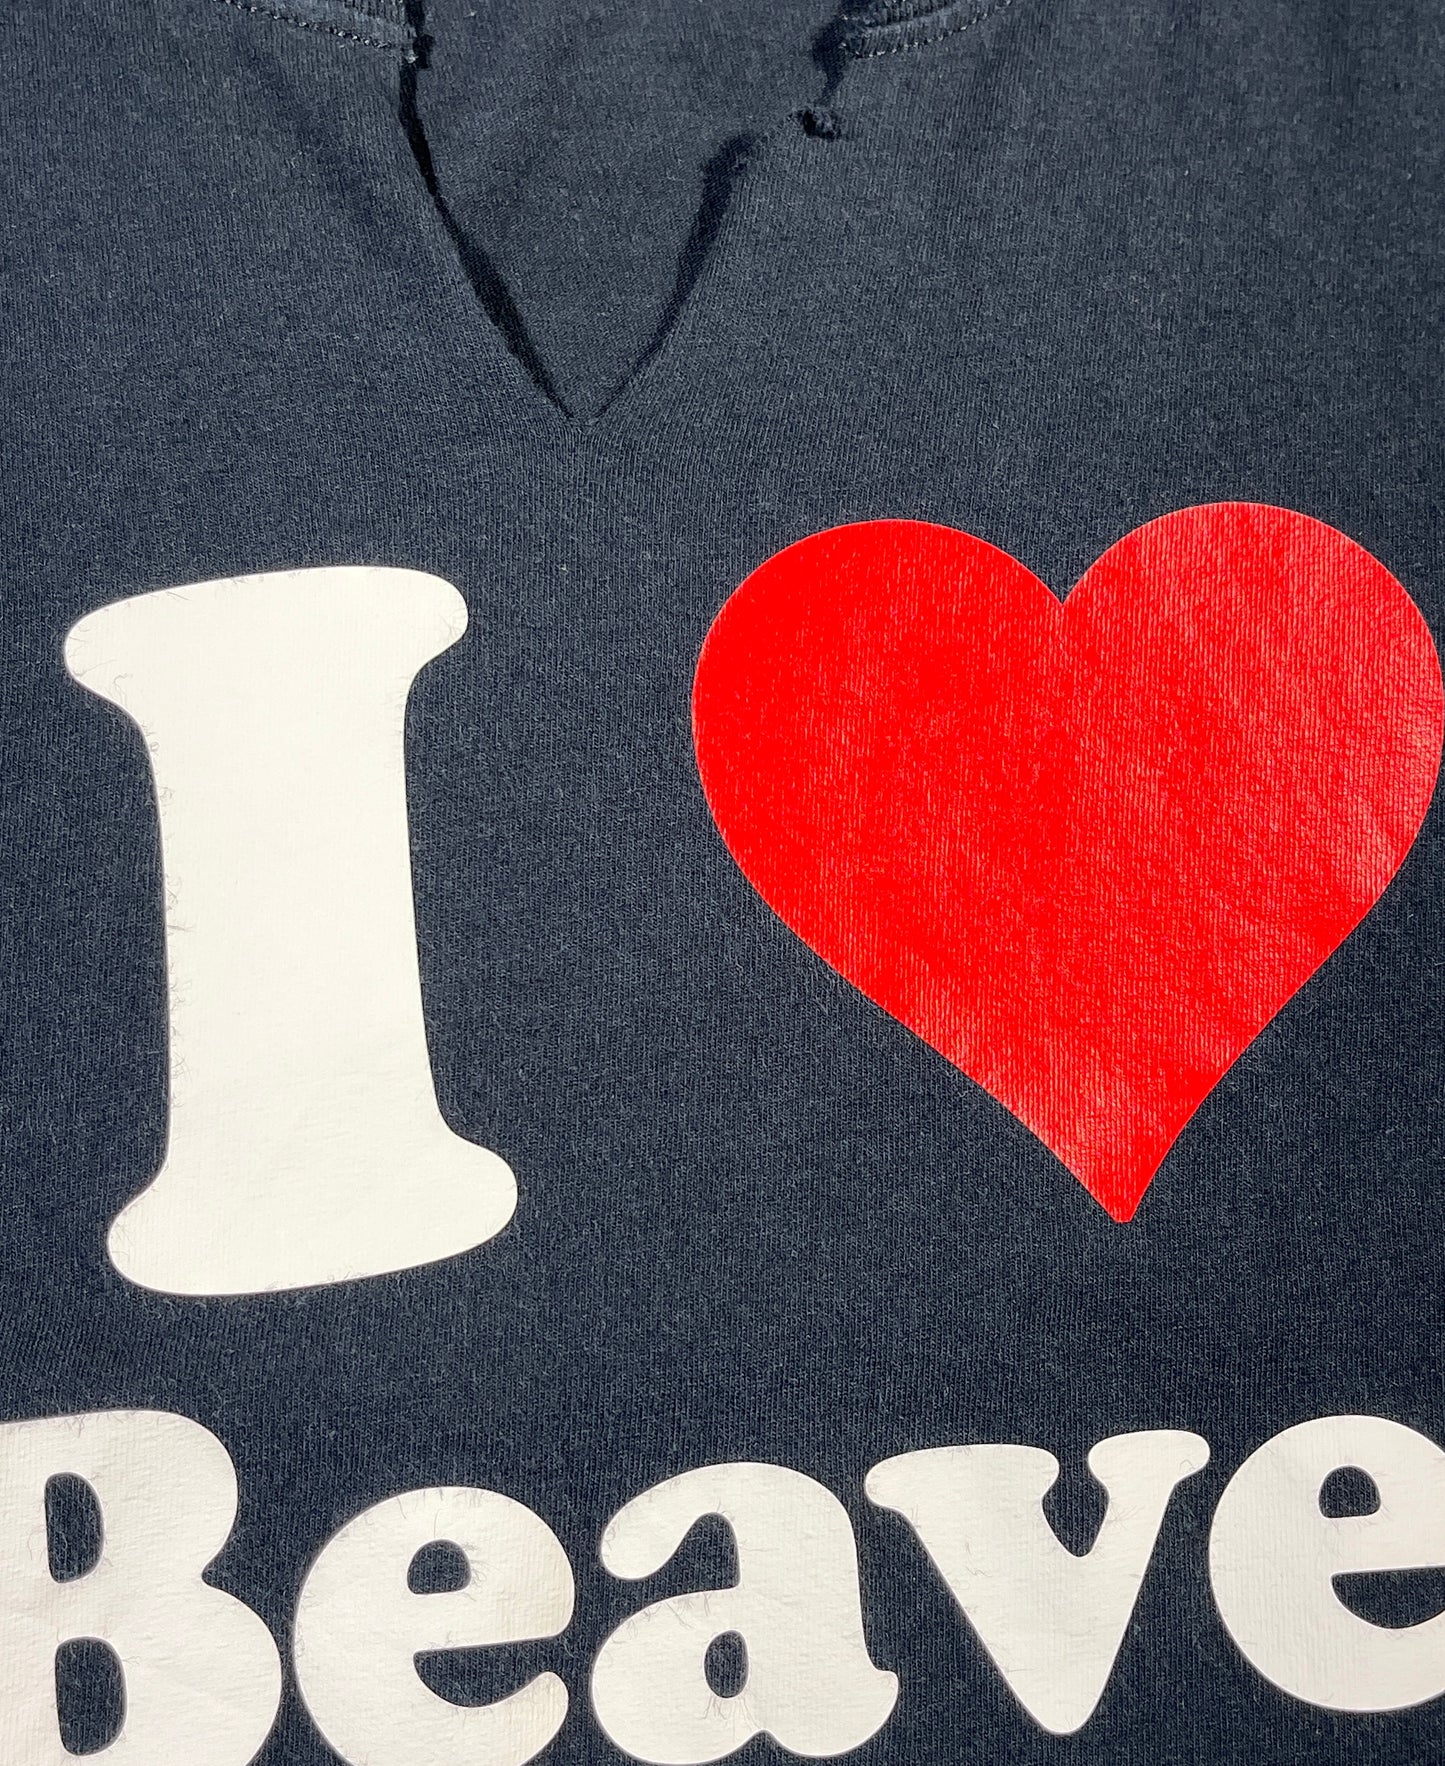 Vintage I Love Beaver T-Shirt Slogan Funny I Heart Tee